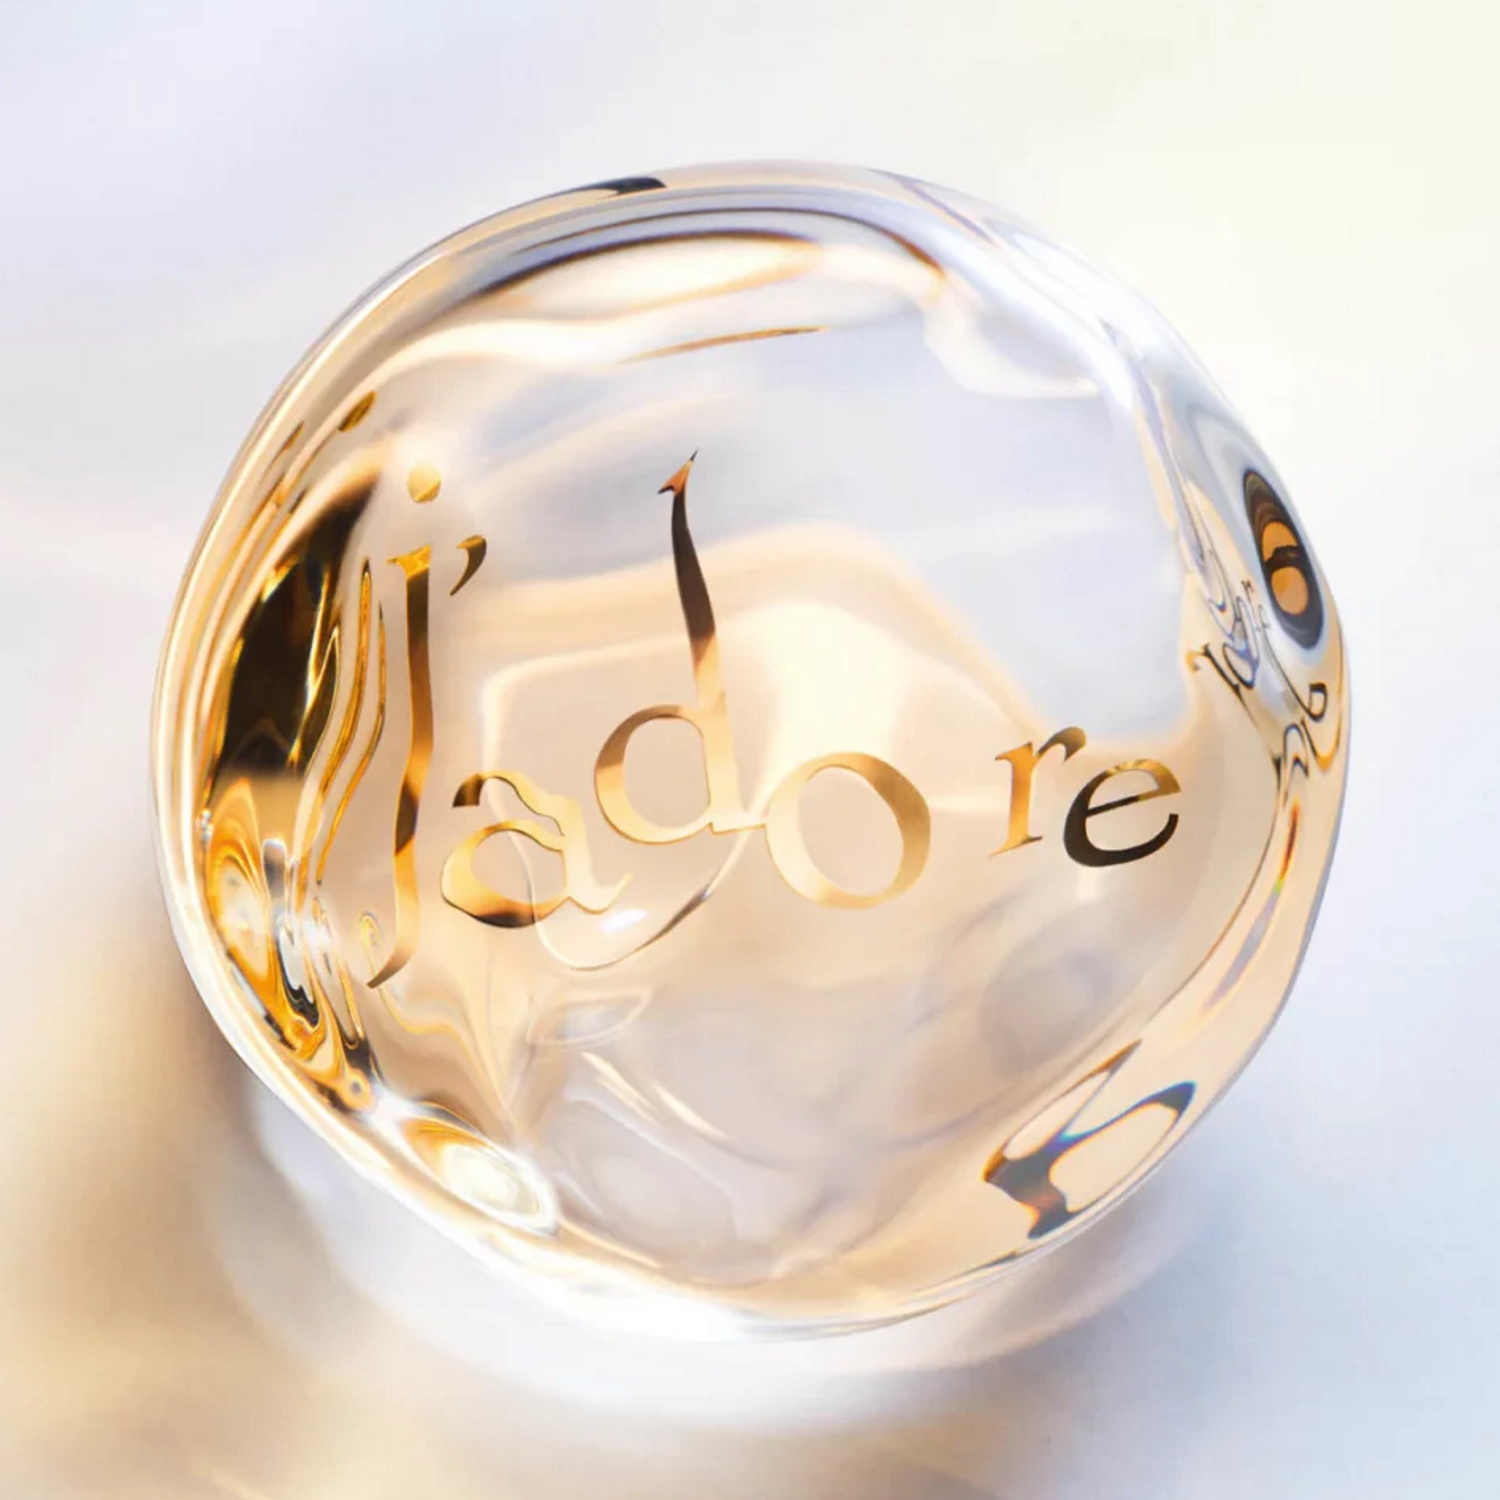 J’adore Parfum d’Eau : La nouvelle eau de parfum sans alcool de Dior